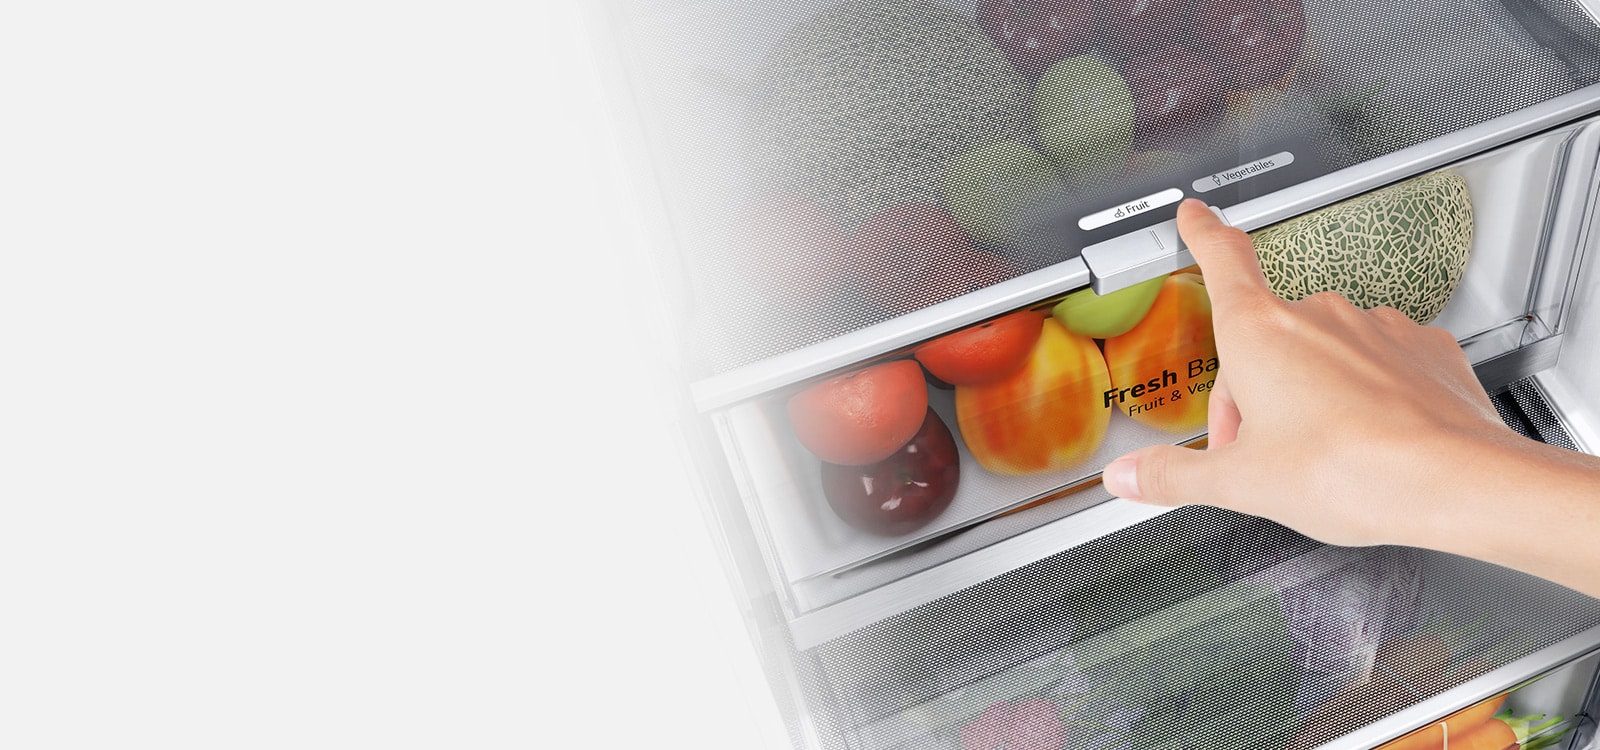 الأدراج السفلية للثلاجة مليئة بالمنتجات الطازجة الملونة. تكبّر الصورة الداخلية ذراع التحكم لاختيار مستوى الرطوبة الأمثل للحفاظ على المنتجات طازجة.